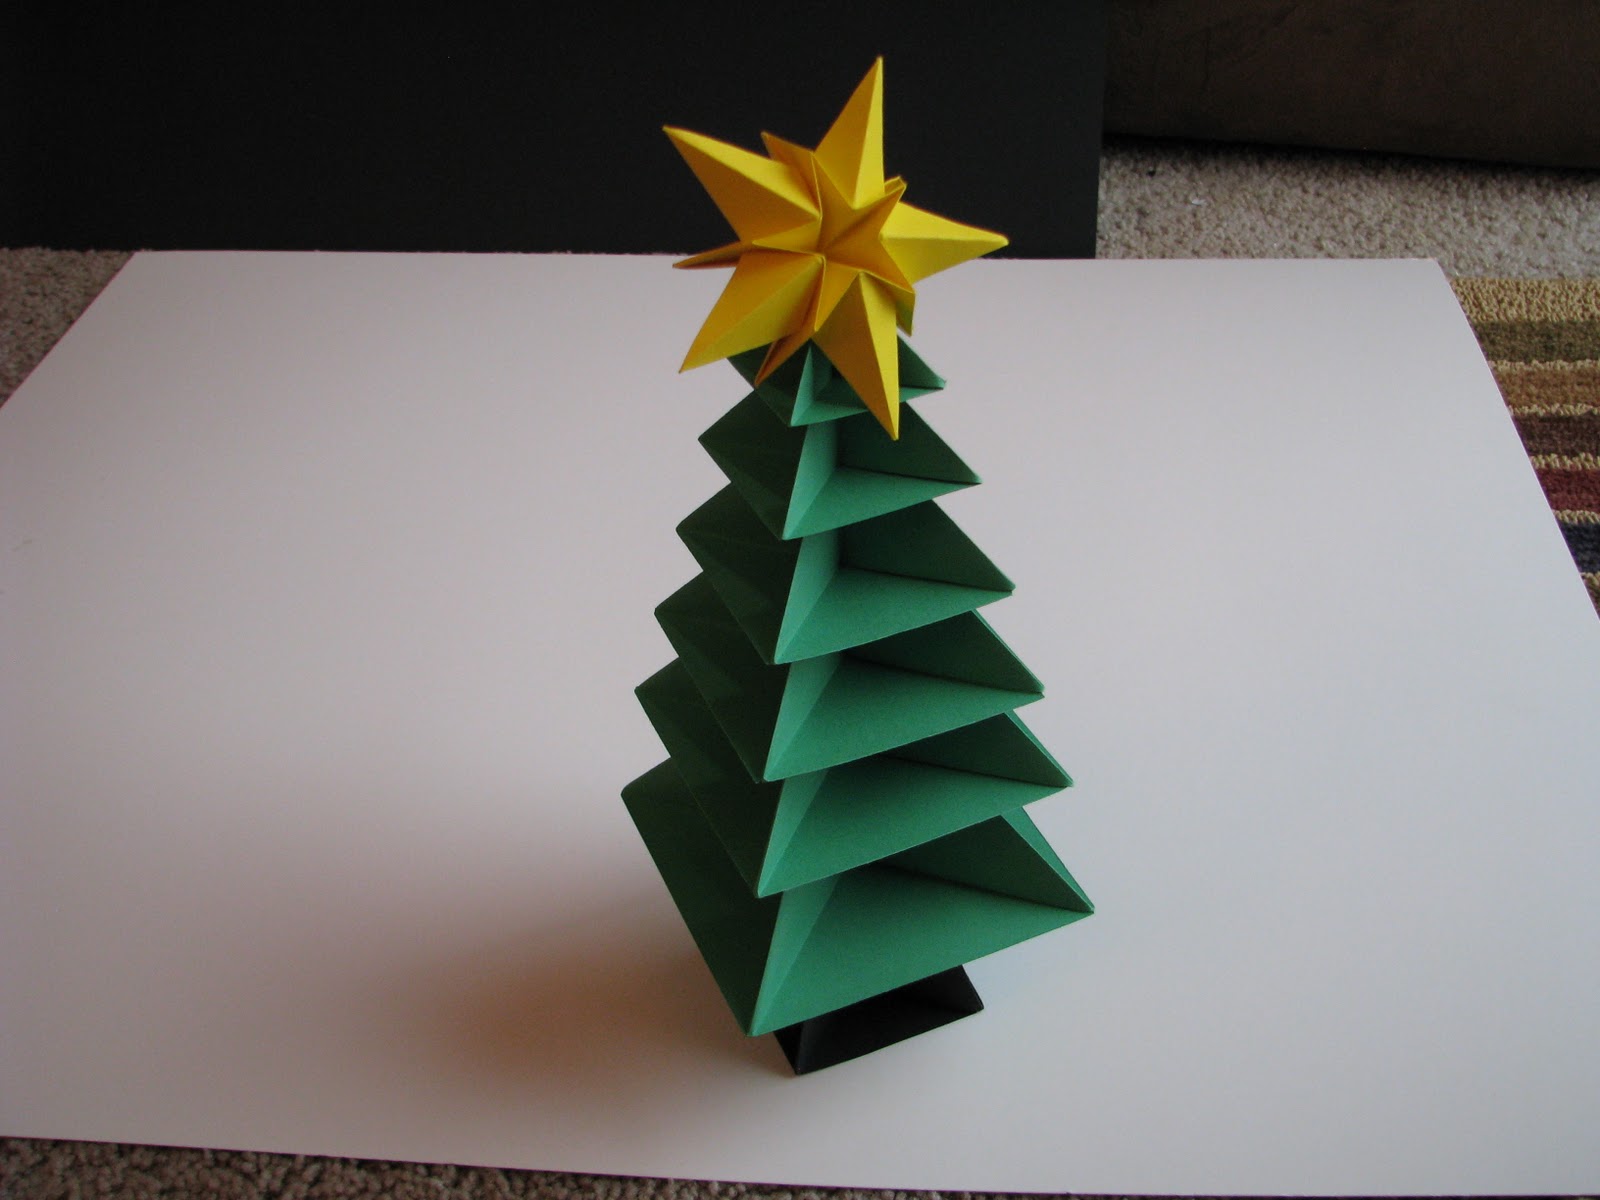 een voorbeeld van het zelf maken van een ongewone kerstboom uit karton